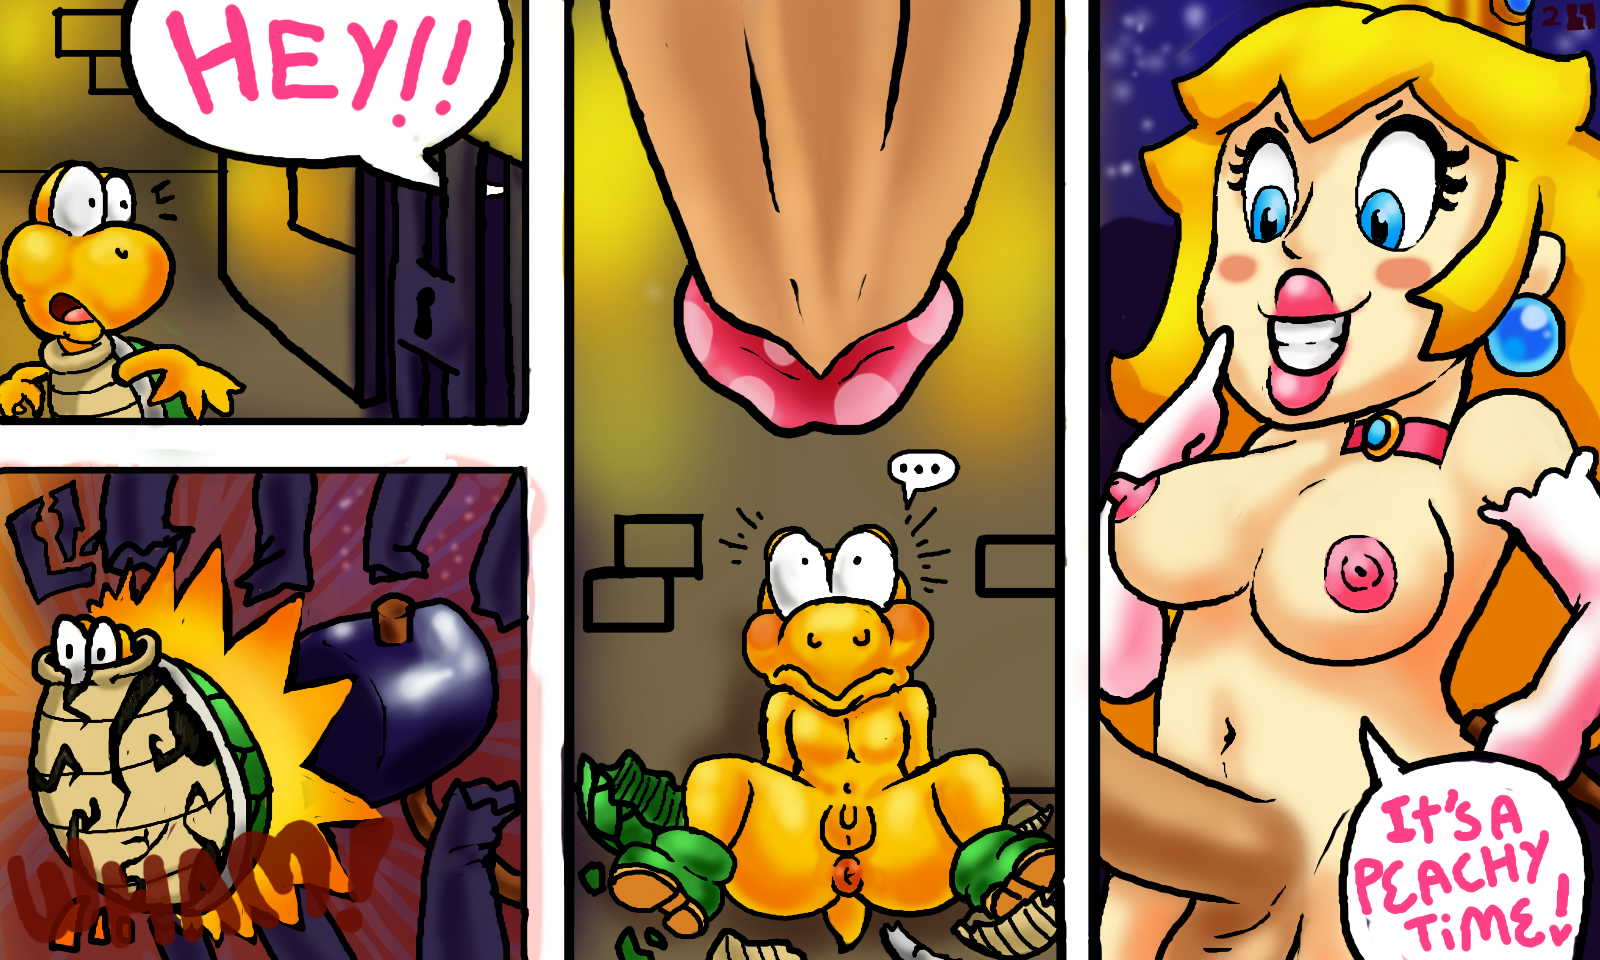 1600px x 960px - Read [LinkLink] 1UP! (Super Mario Bros.) Hentai Porns - Manga And  Porncomics Xxx